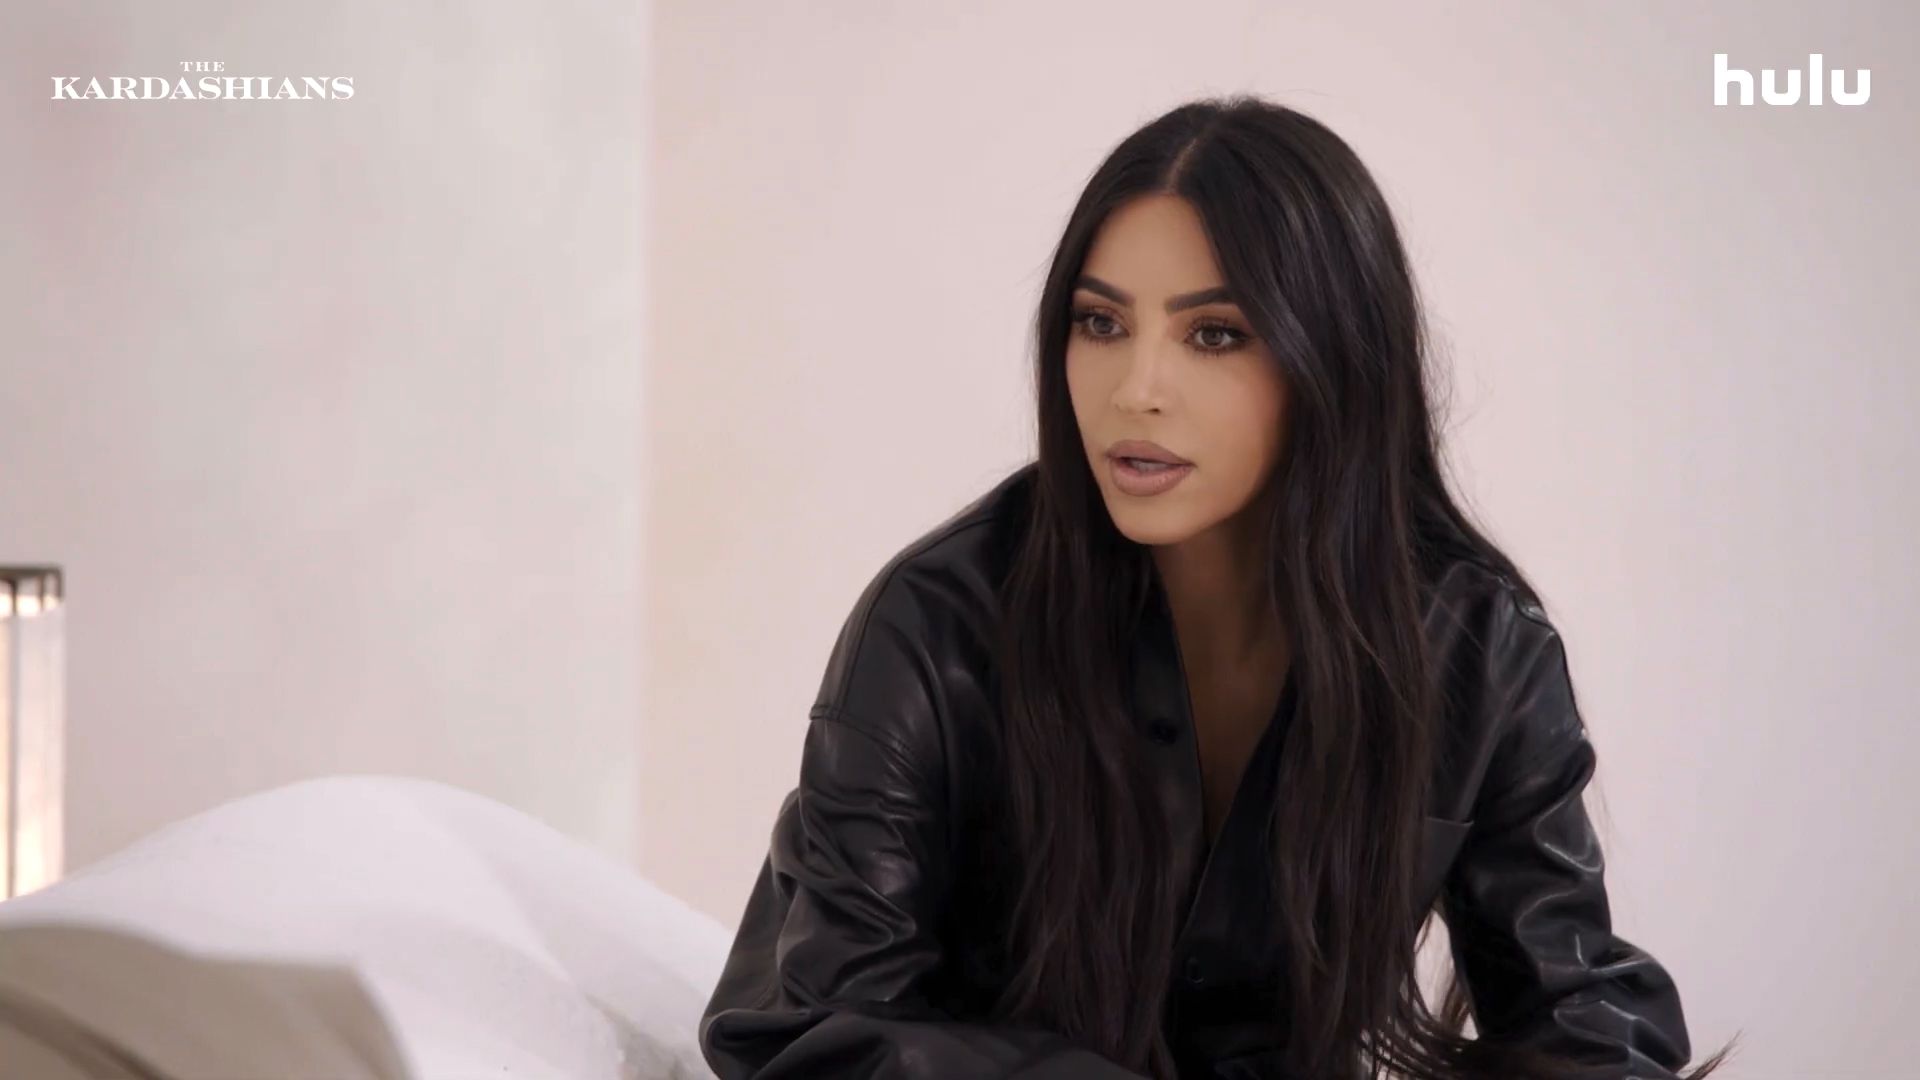 Kylie Jenner flaunts her new designer stroller as she plans